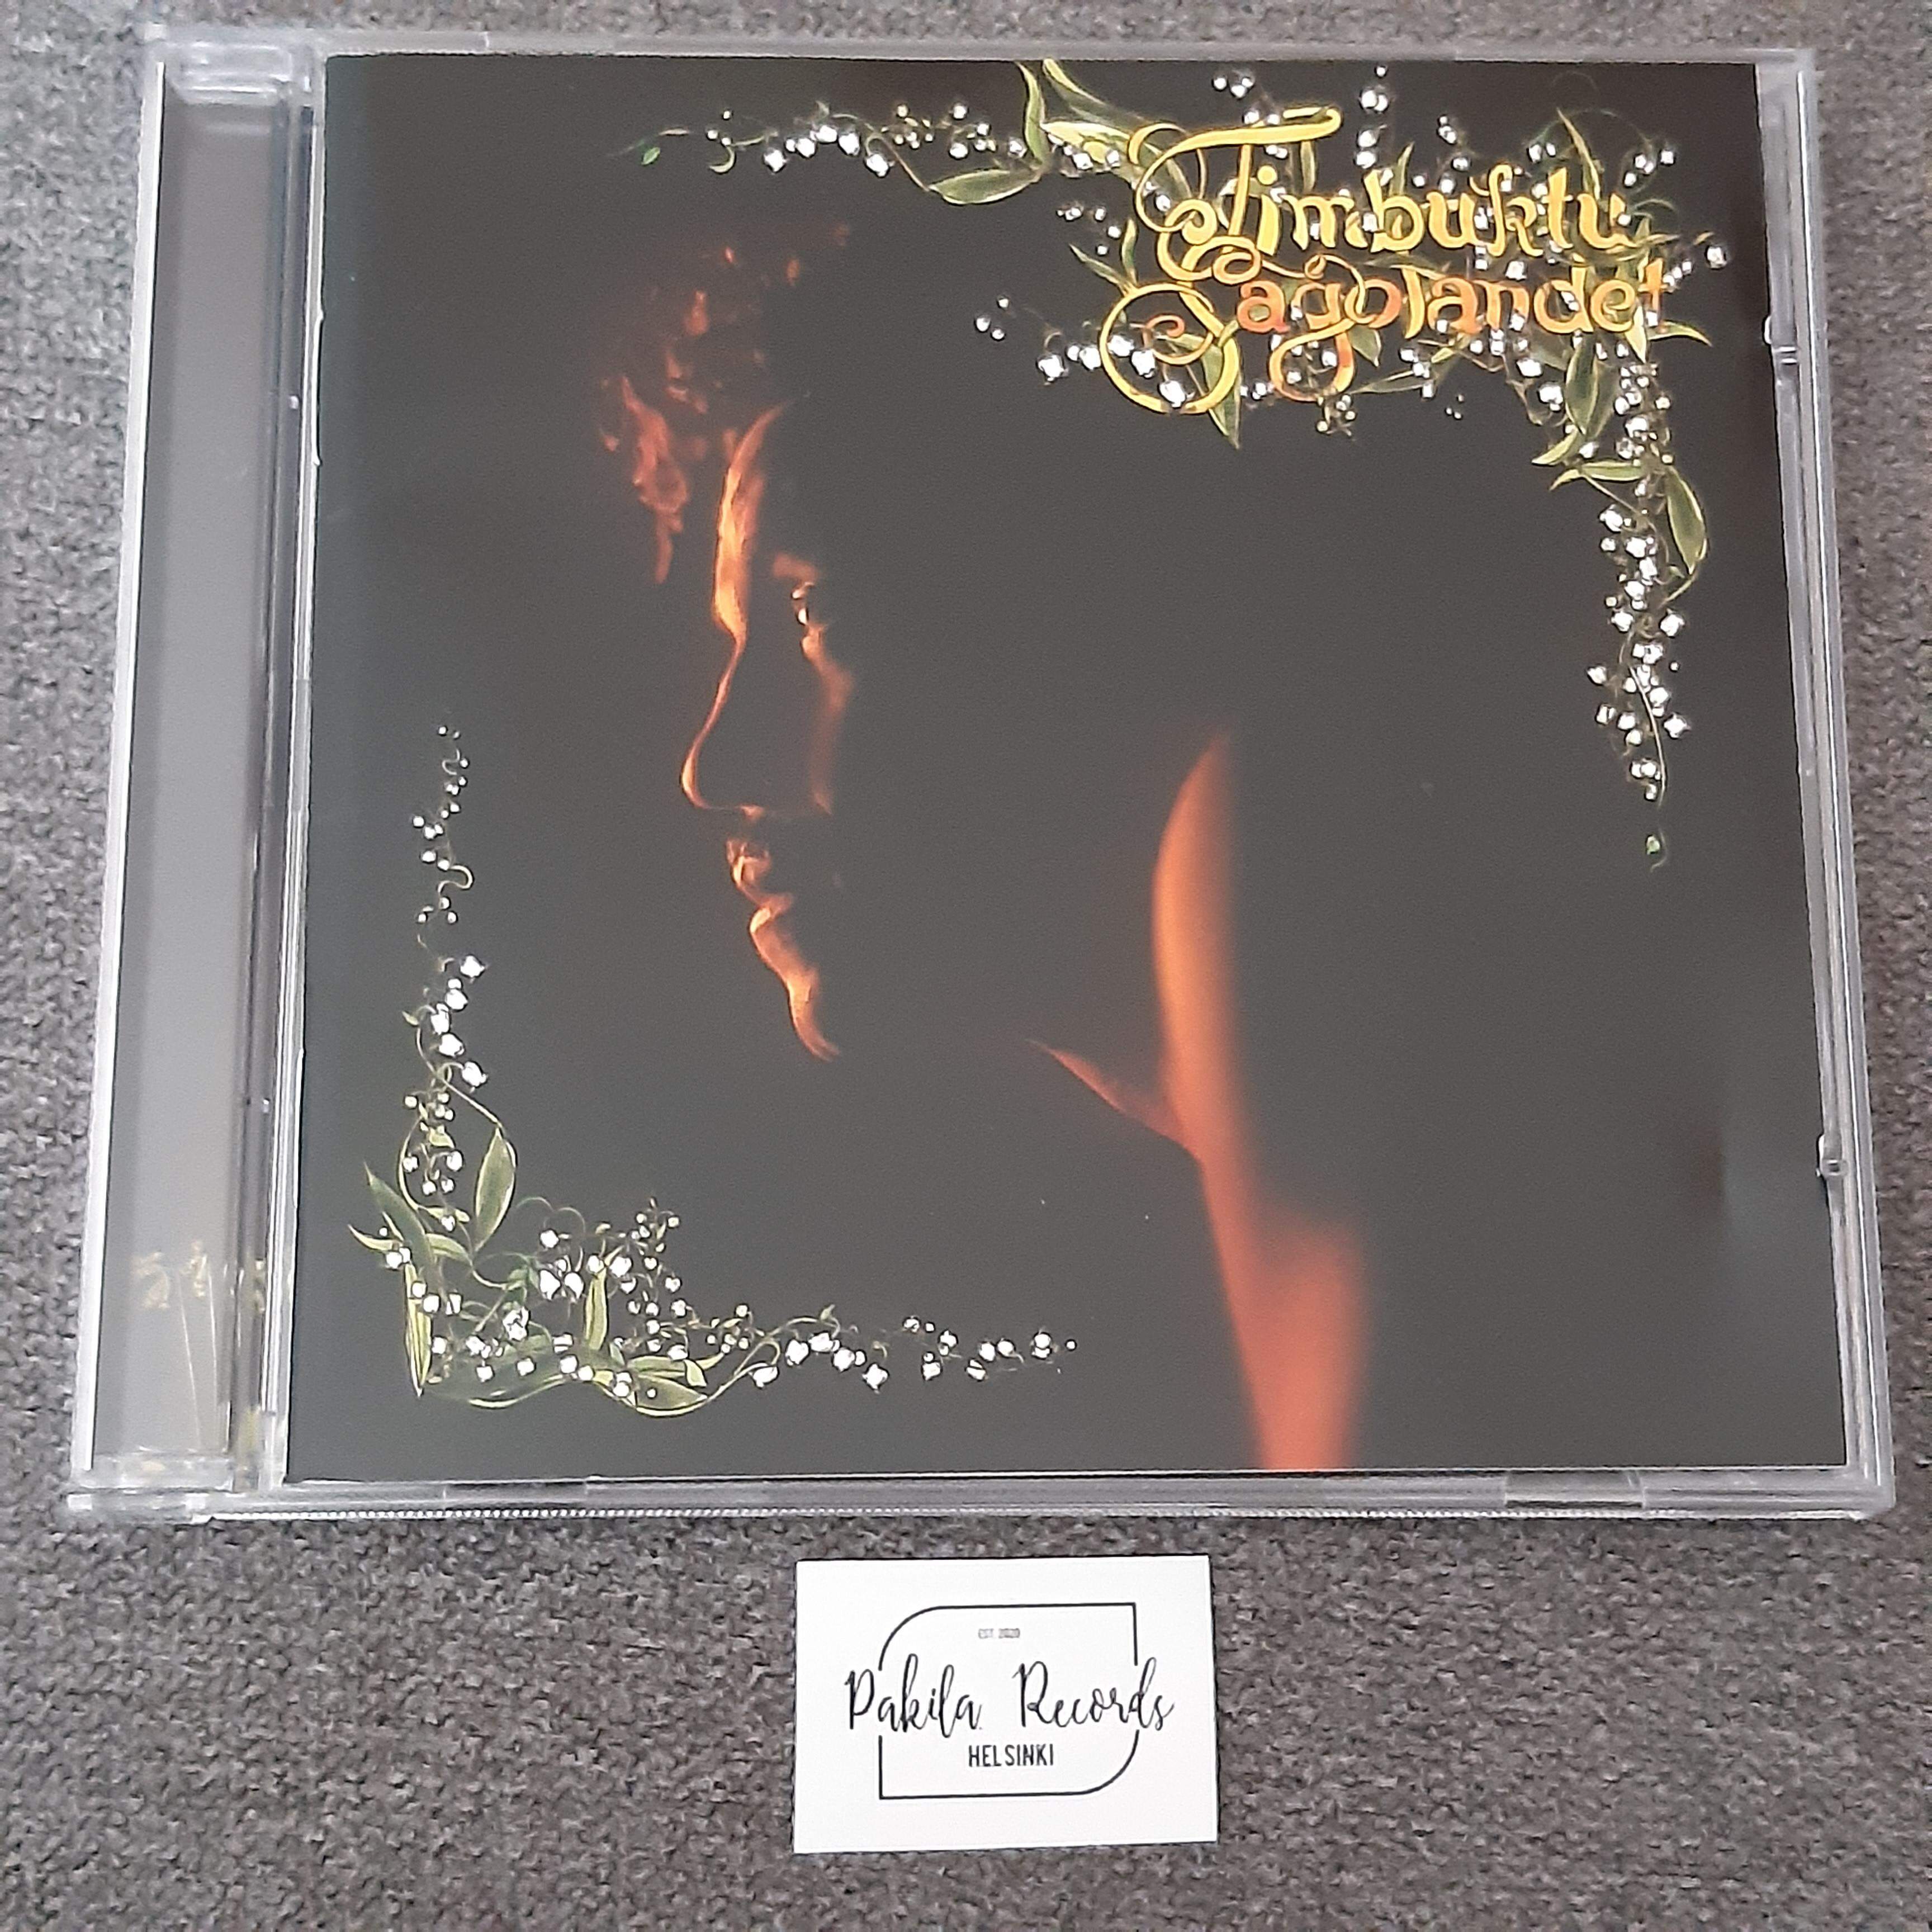 Timbuktu - Sagolandet - CD (käytetty)